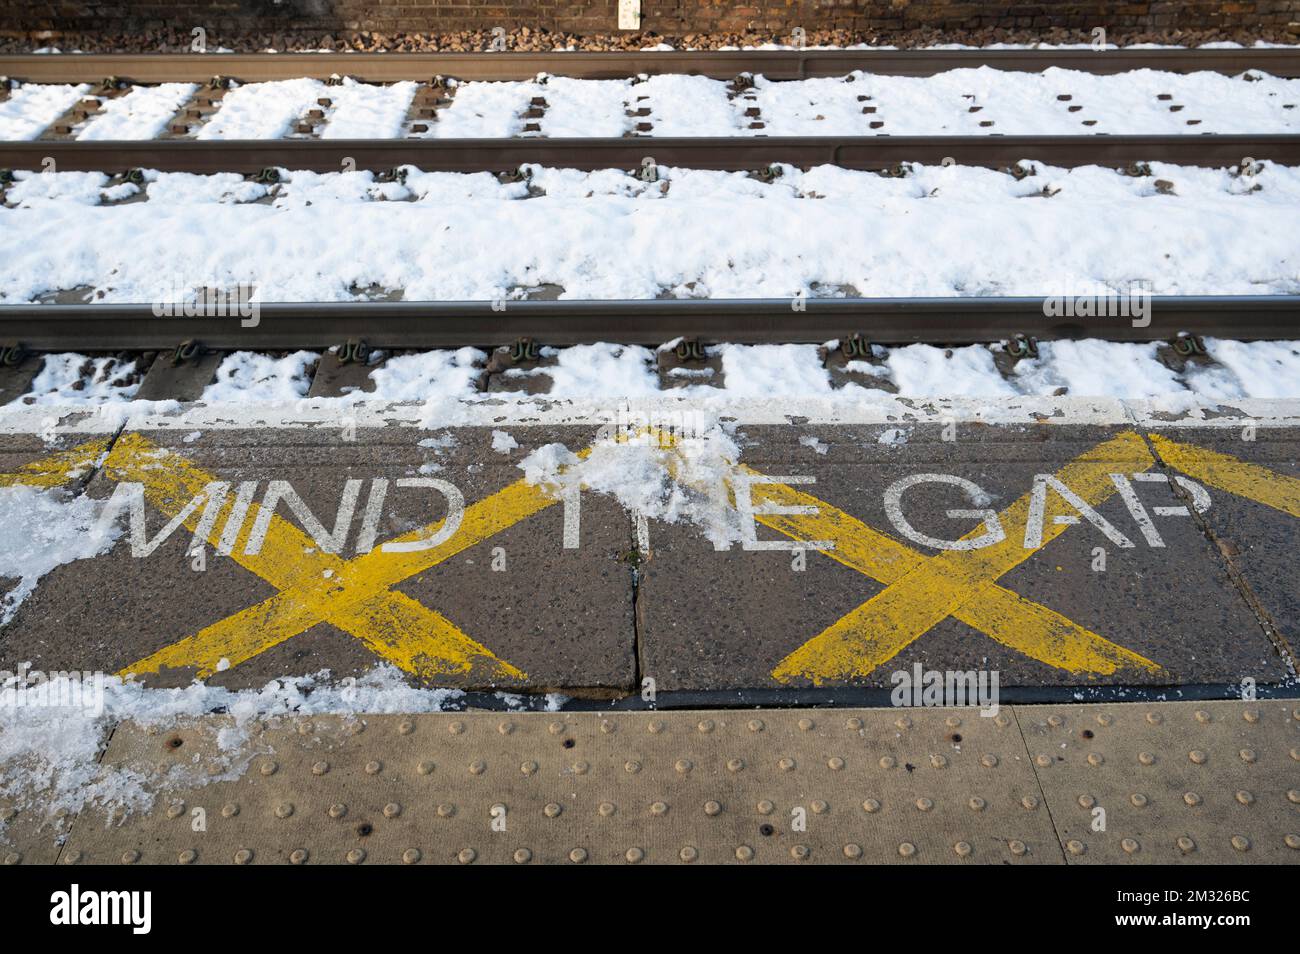 Gare de London Fields, Hackney, Londres. Angleterre ; Royaume-Uni. Trains et plate-forme disant « Mind the Gap » dans la neige le jour de la grève des trains. Banque D'Images